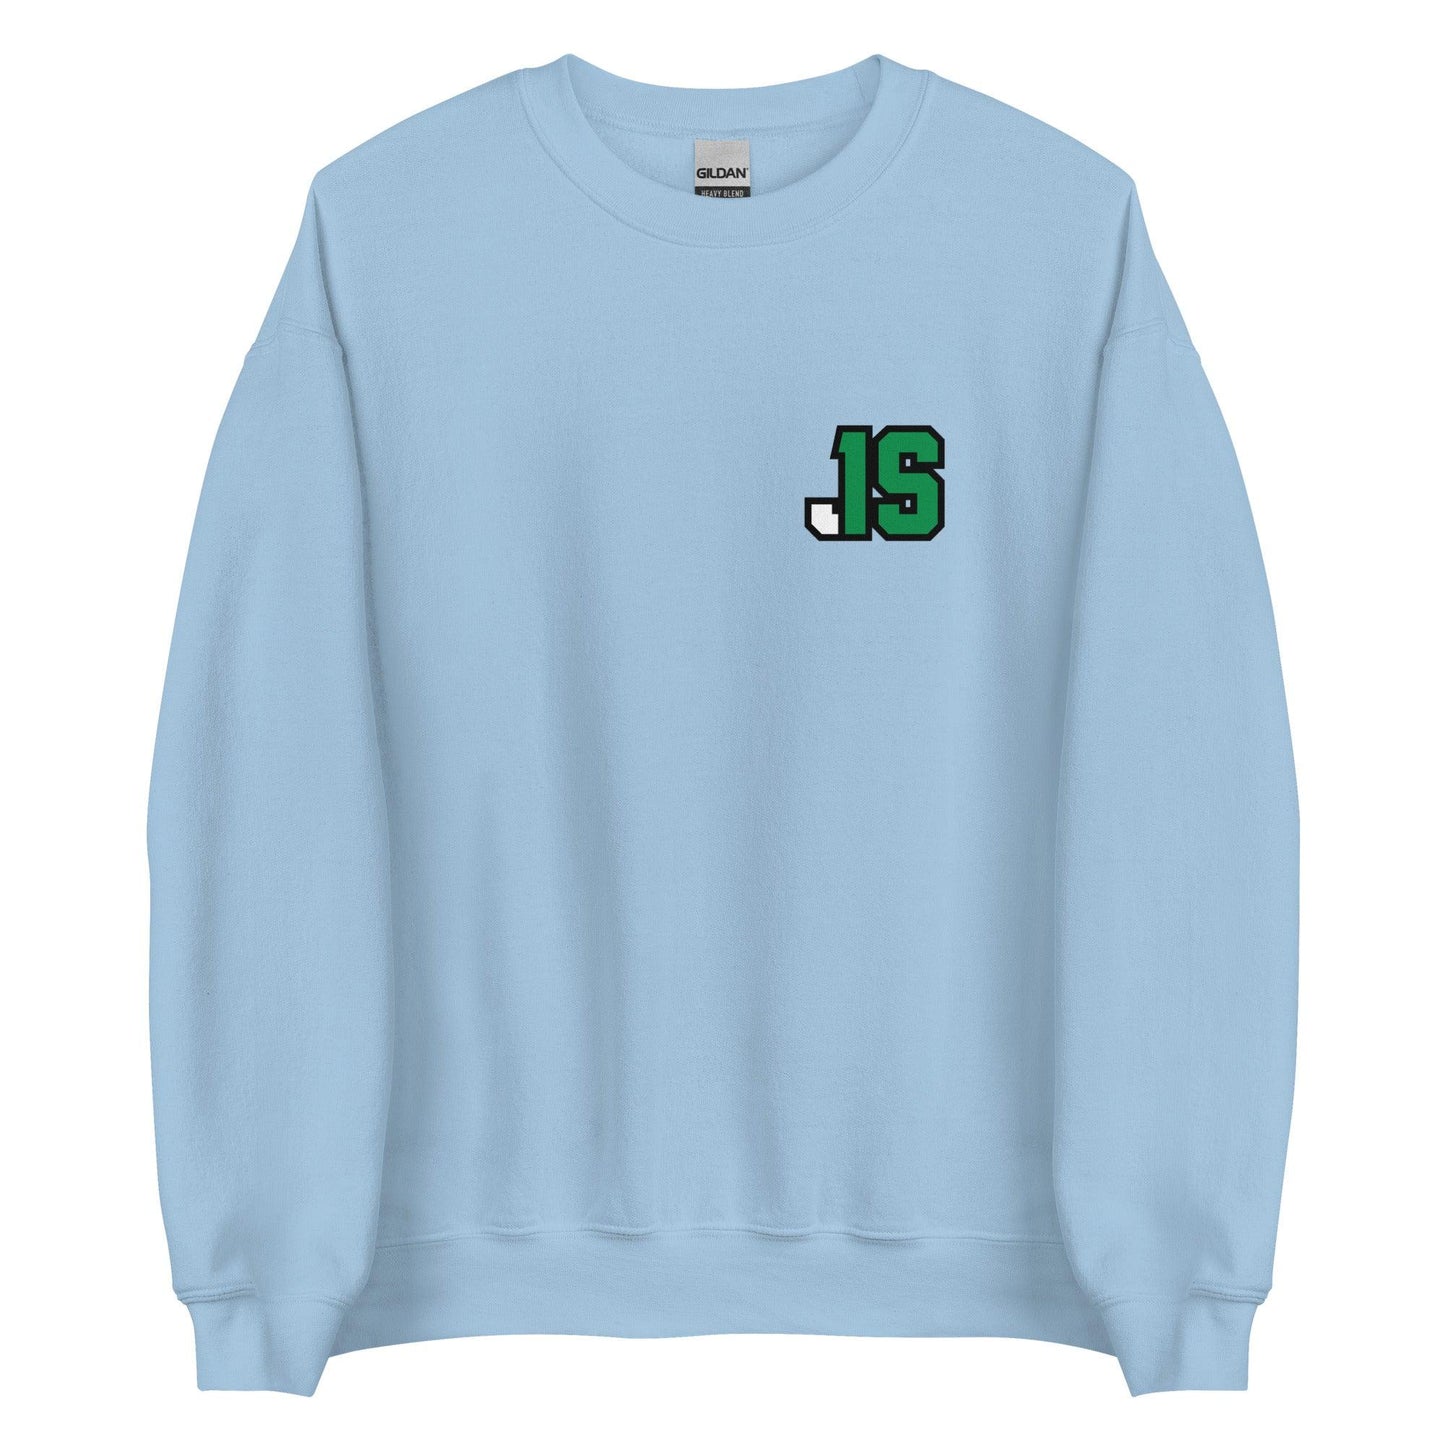 Jyaire Shorter "JS1" Sweatshirt - Fan Arch